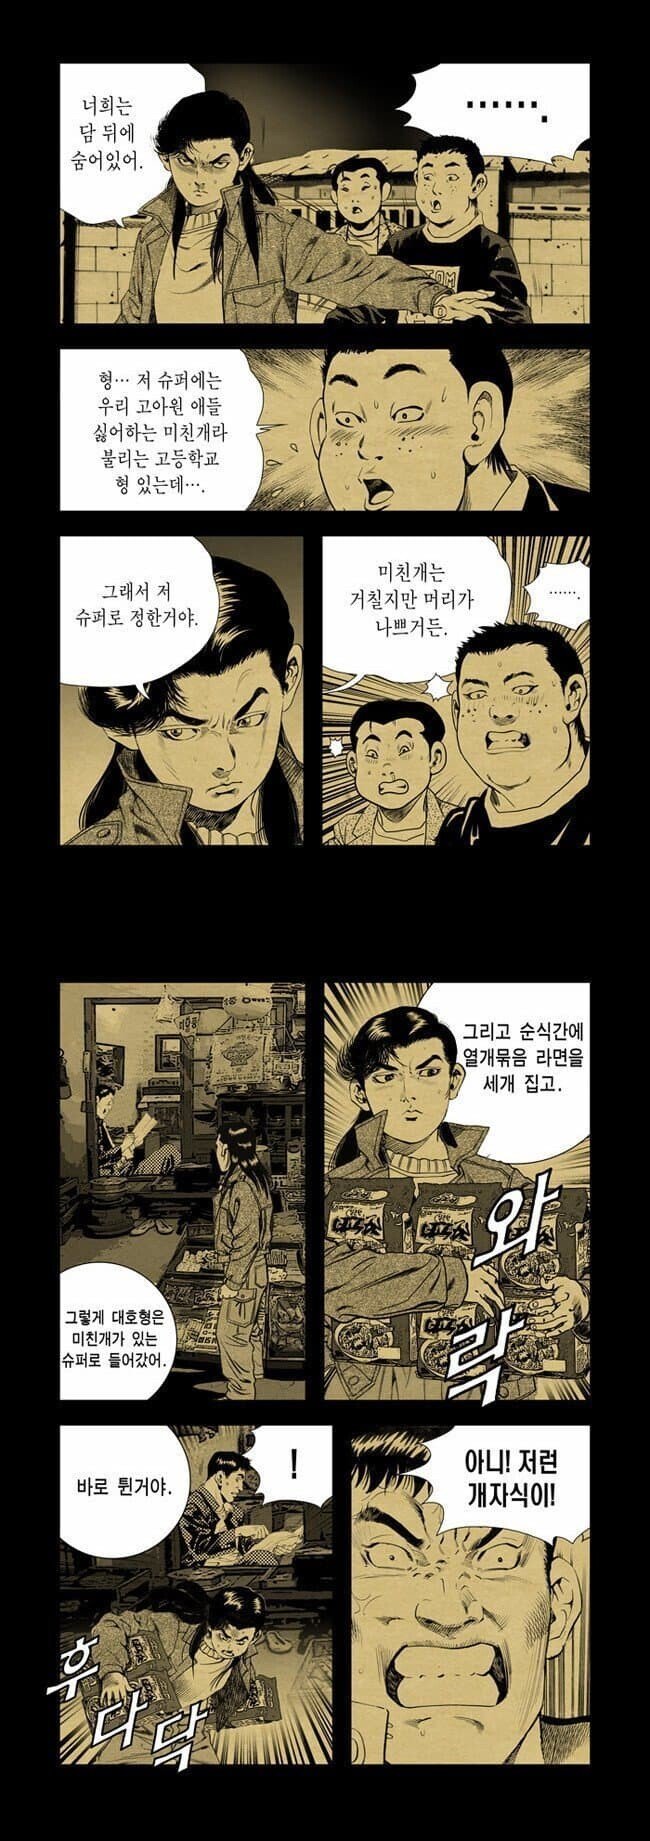 1647916856 (1).jpg 만신 김성모 ㄹㅇ 실화 기반 만화...jpg